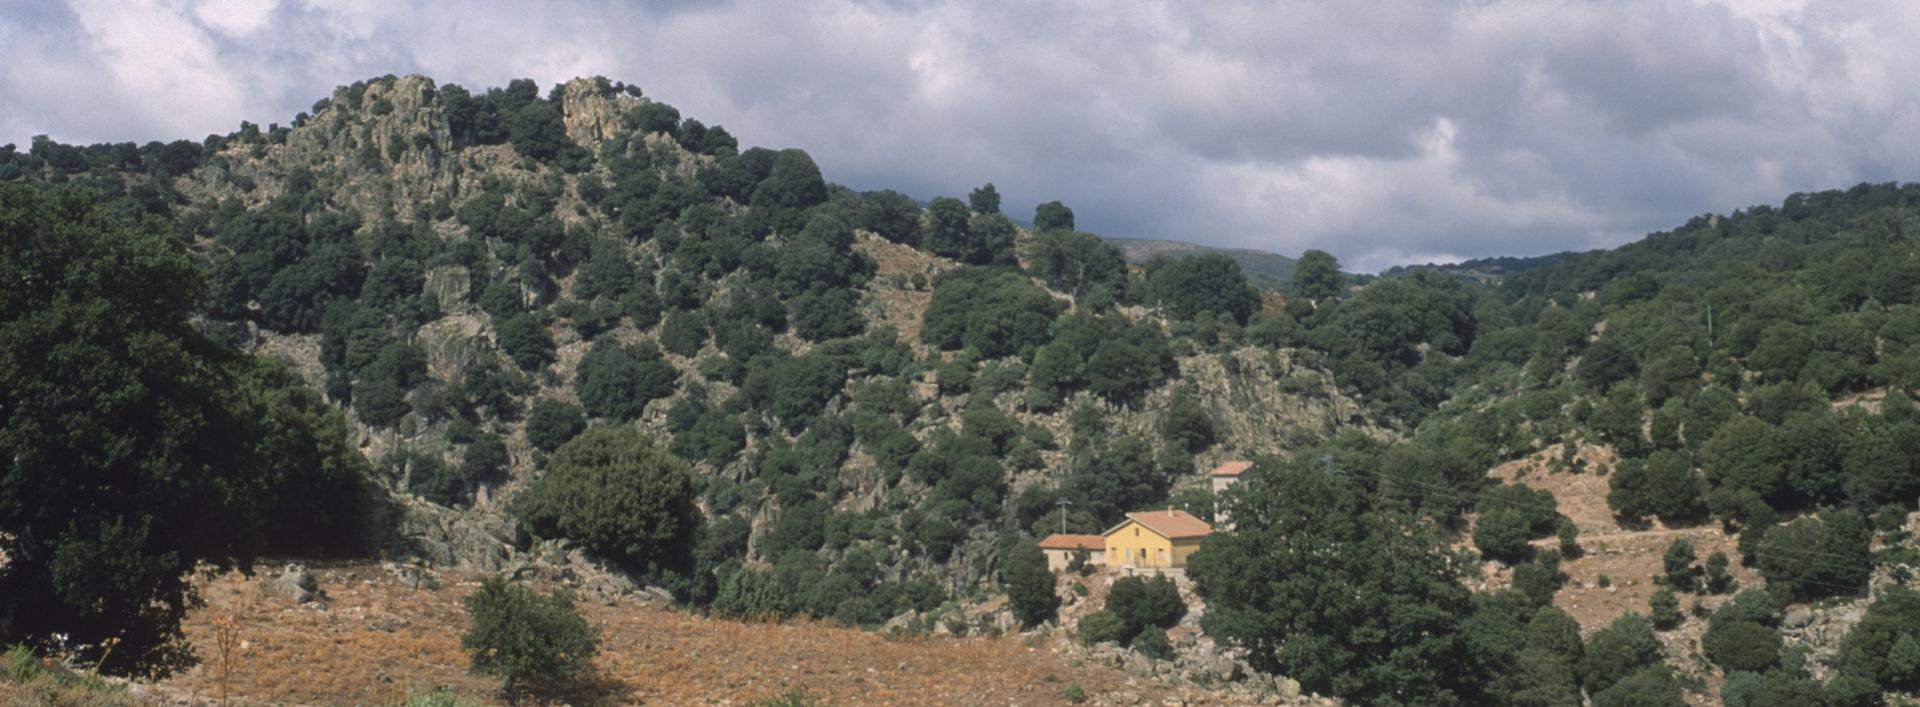 Villagrande Strisaili, paesaggio